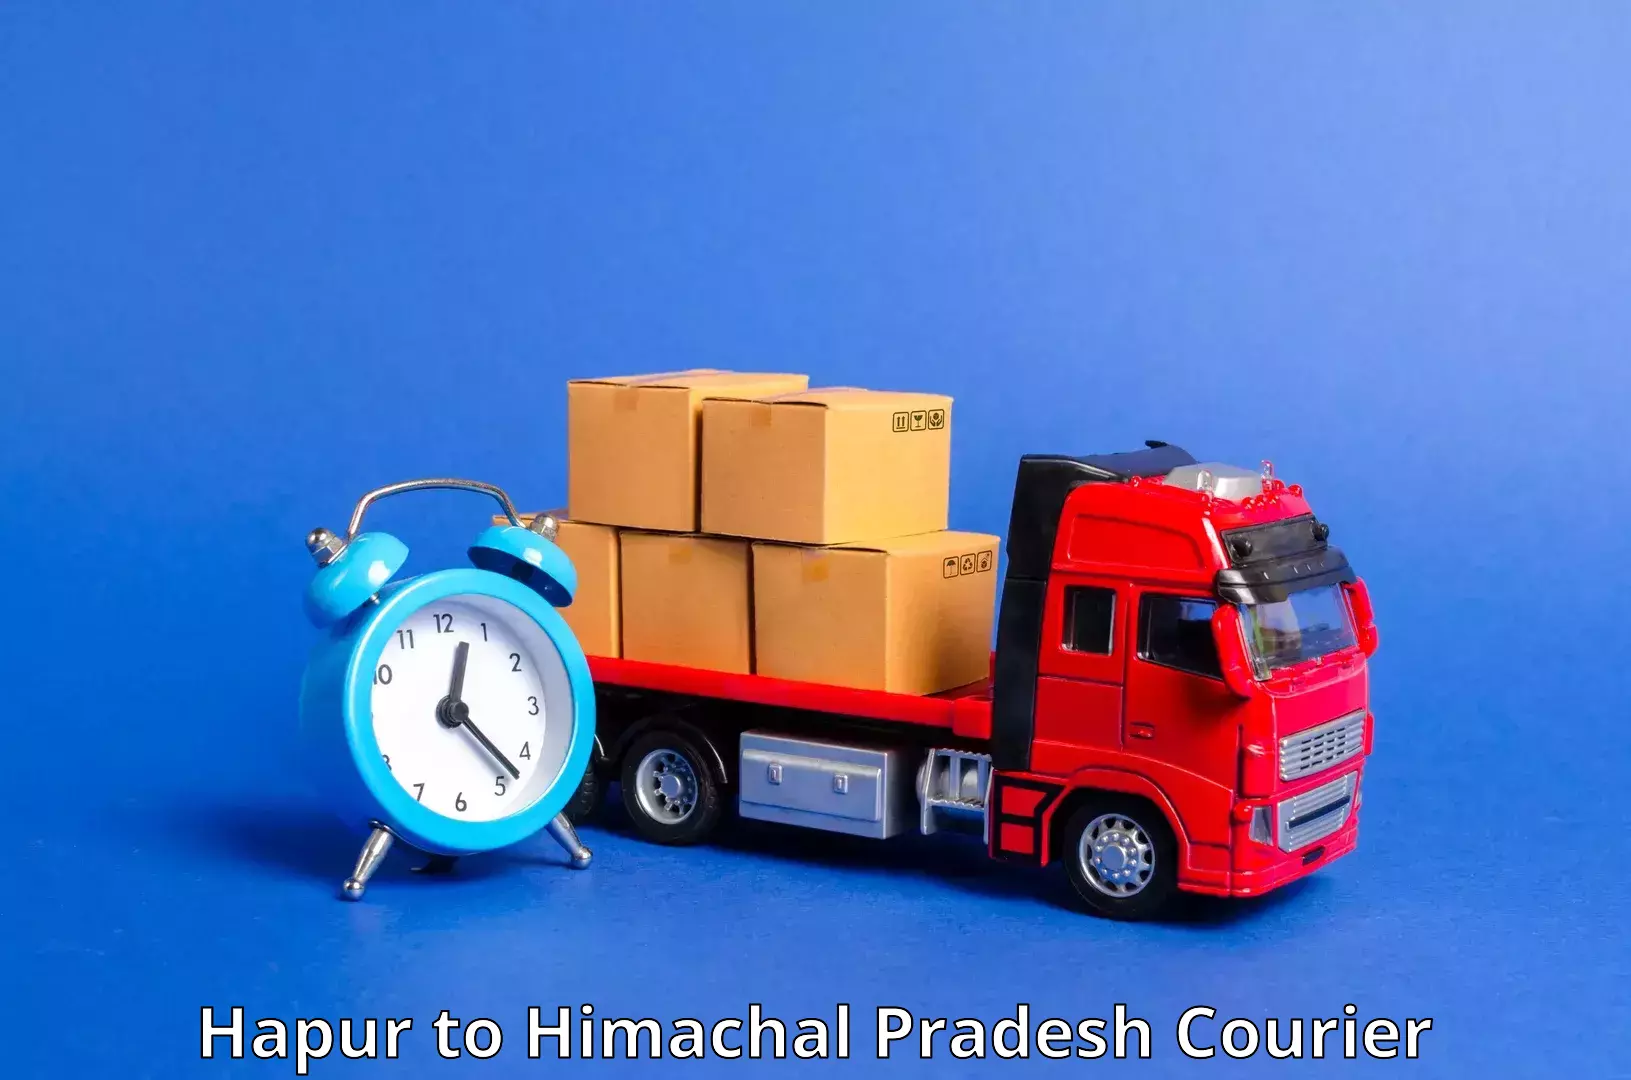 Reliable parcel services Hapur to Dalhousie